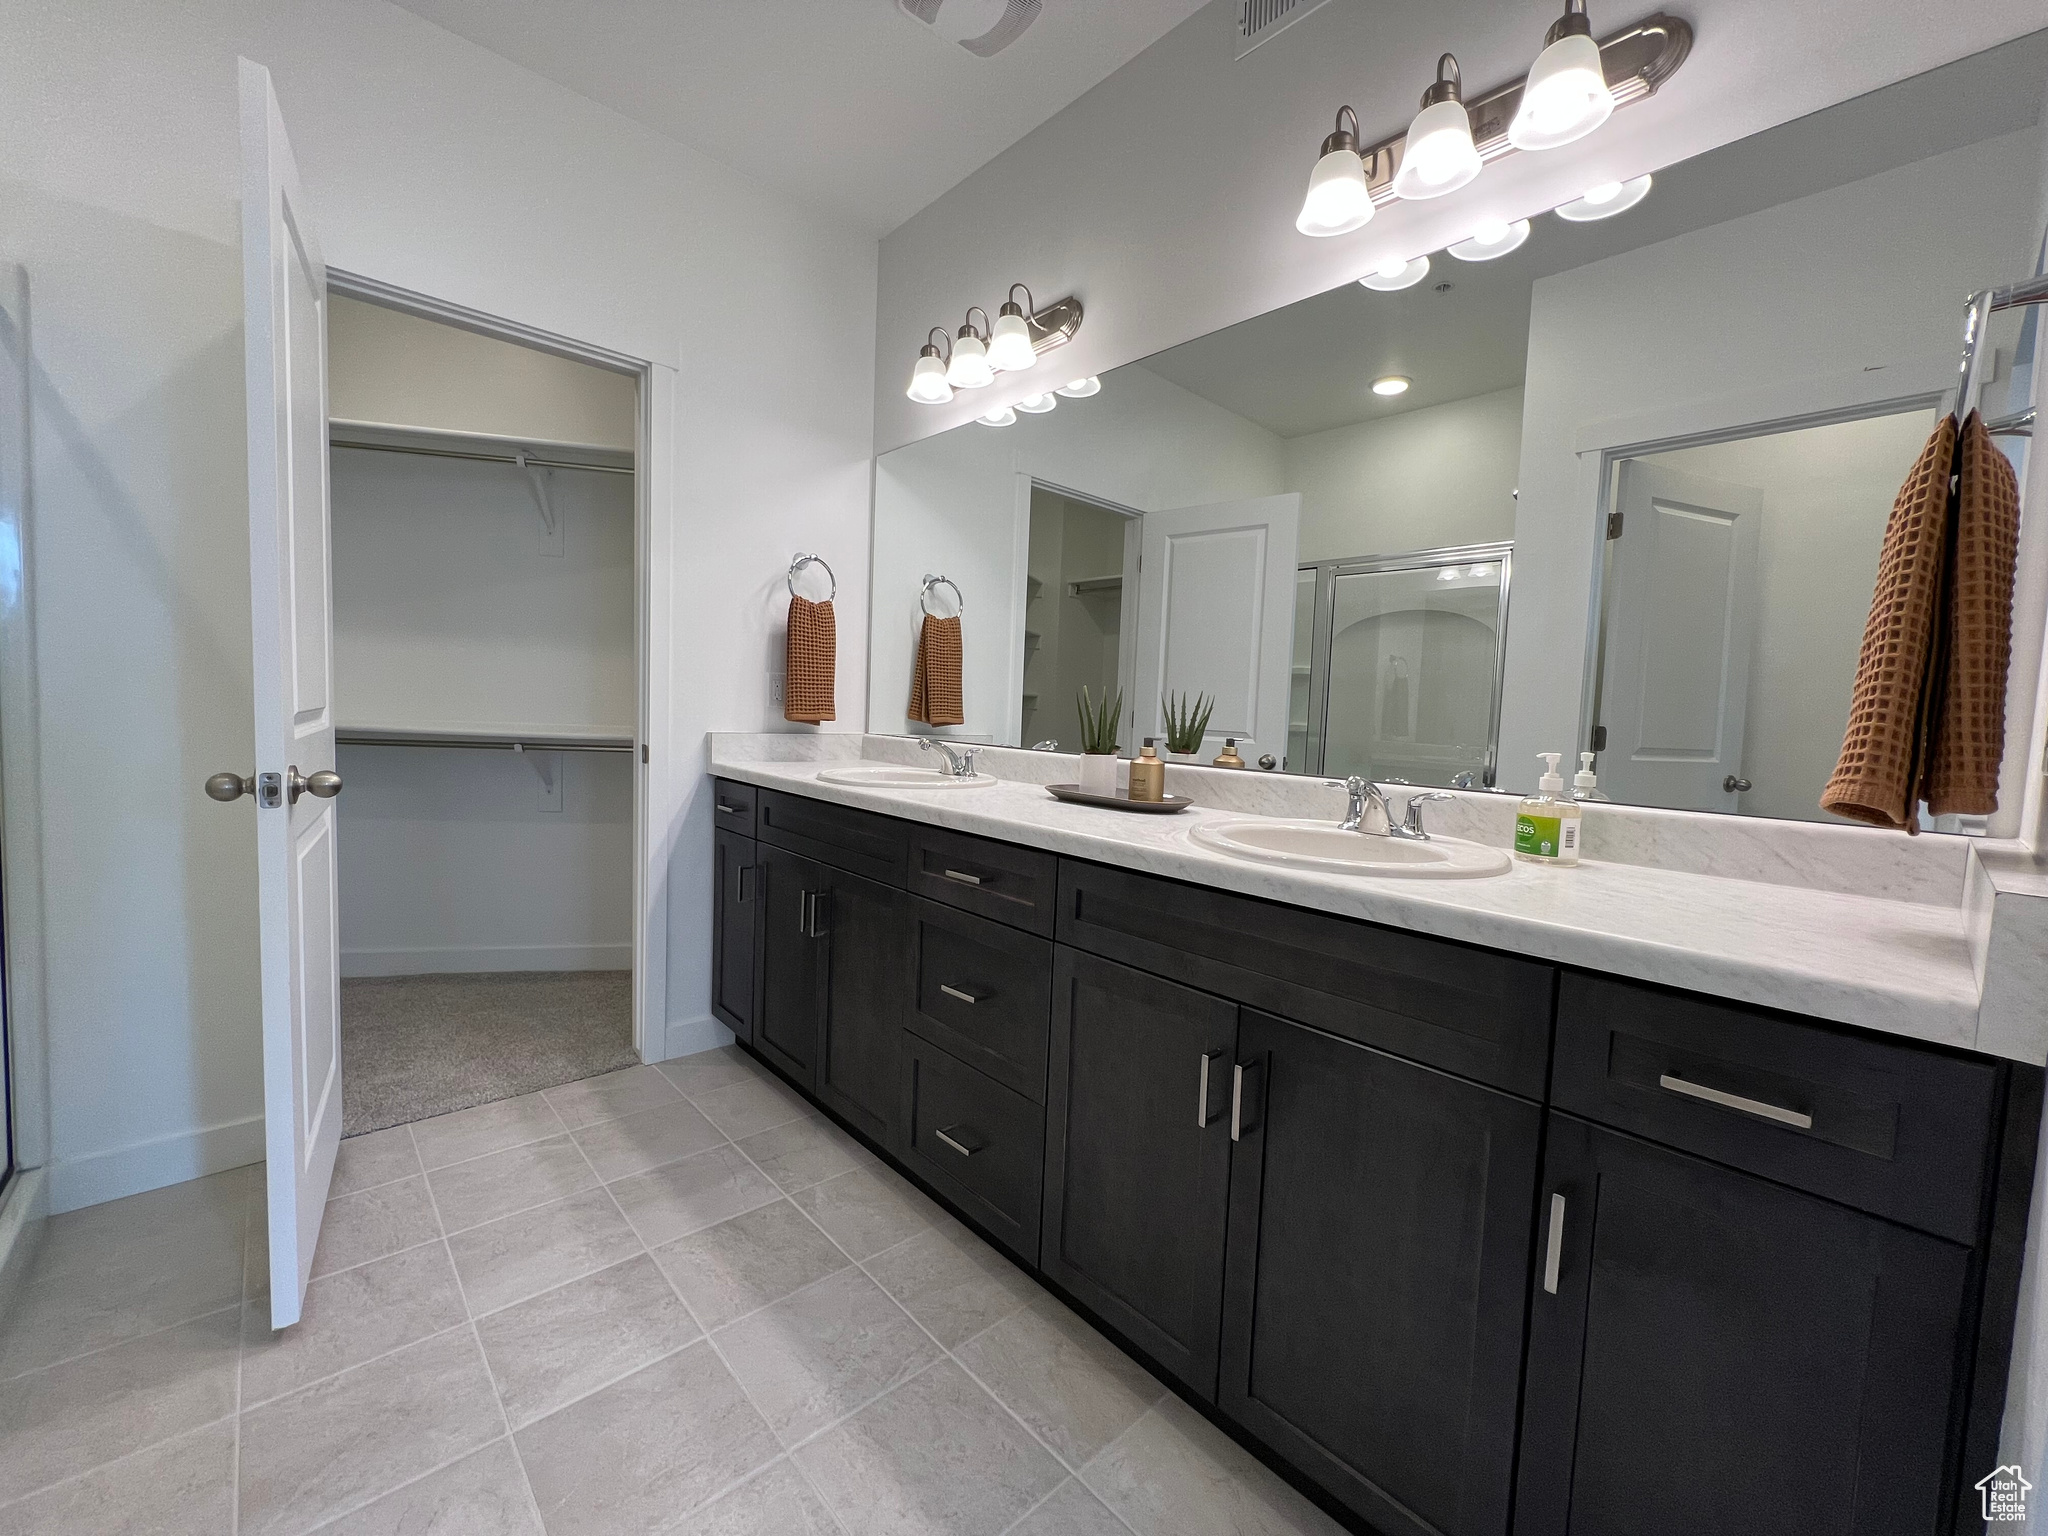 Bathroom featuring dual sinks, tile flooring, and large vanity